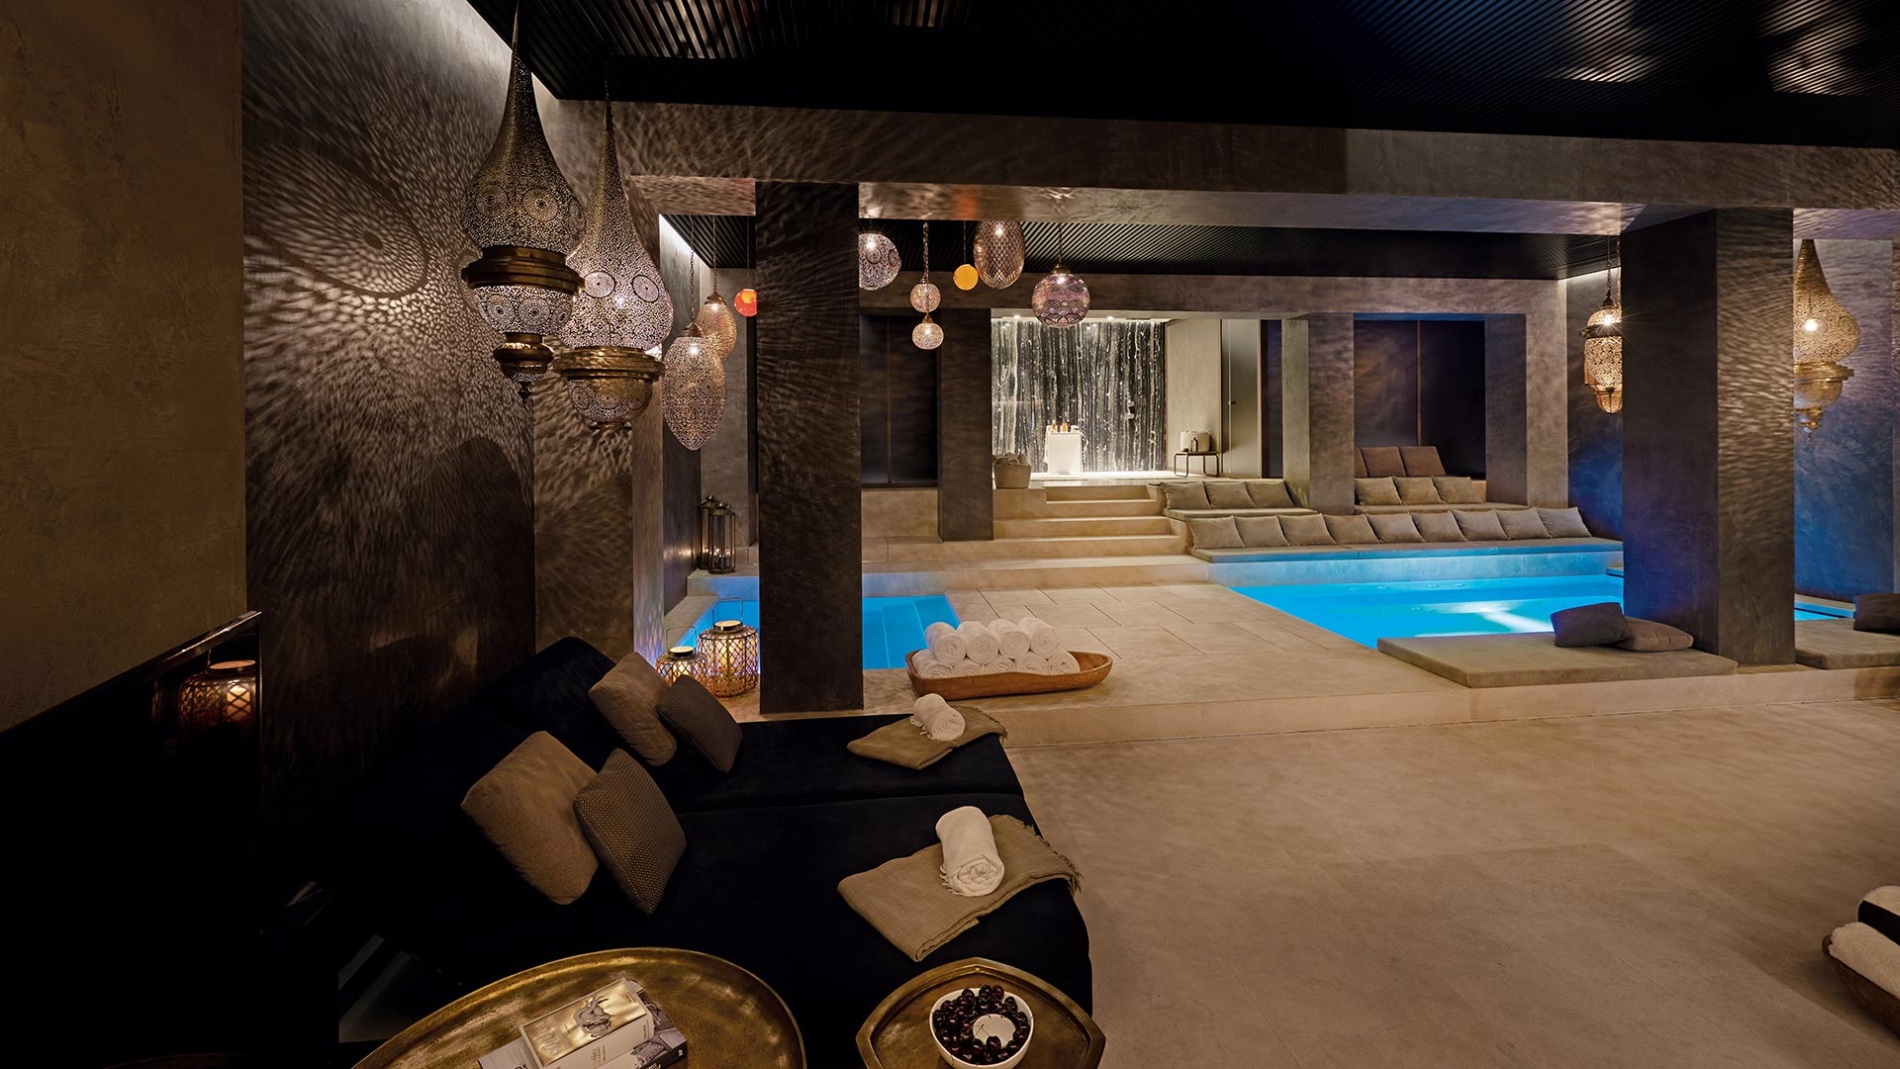 blick in den warm gestalteten spa bereich des ferradura privat resort mit dunklen wänden und hellen erdtönen umgeben von gemütlichen sitzecken